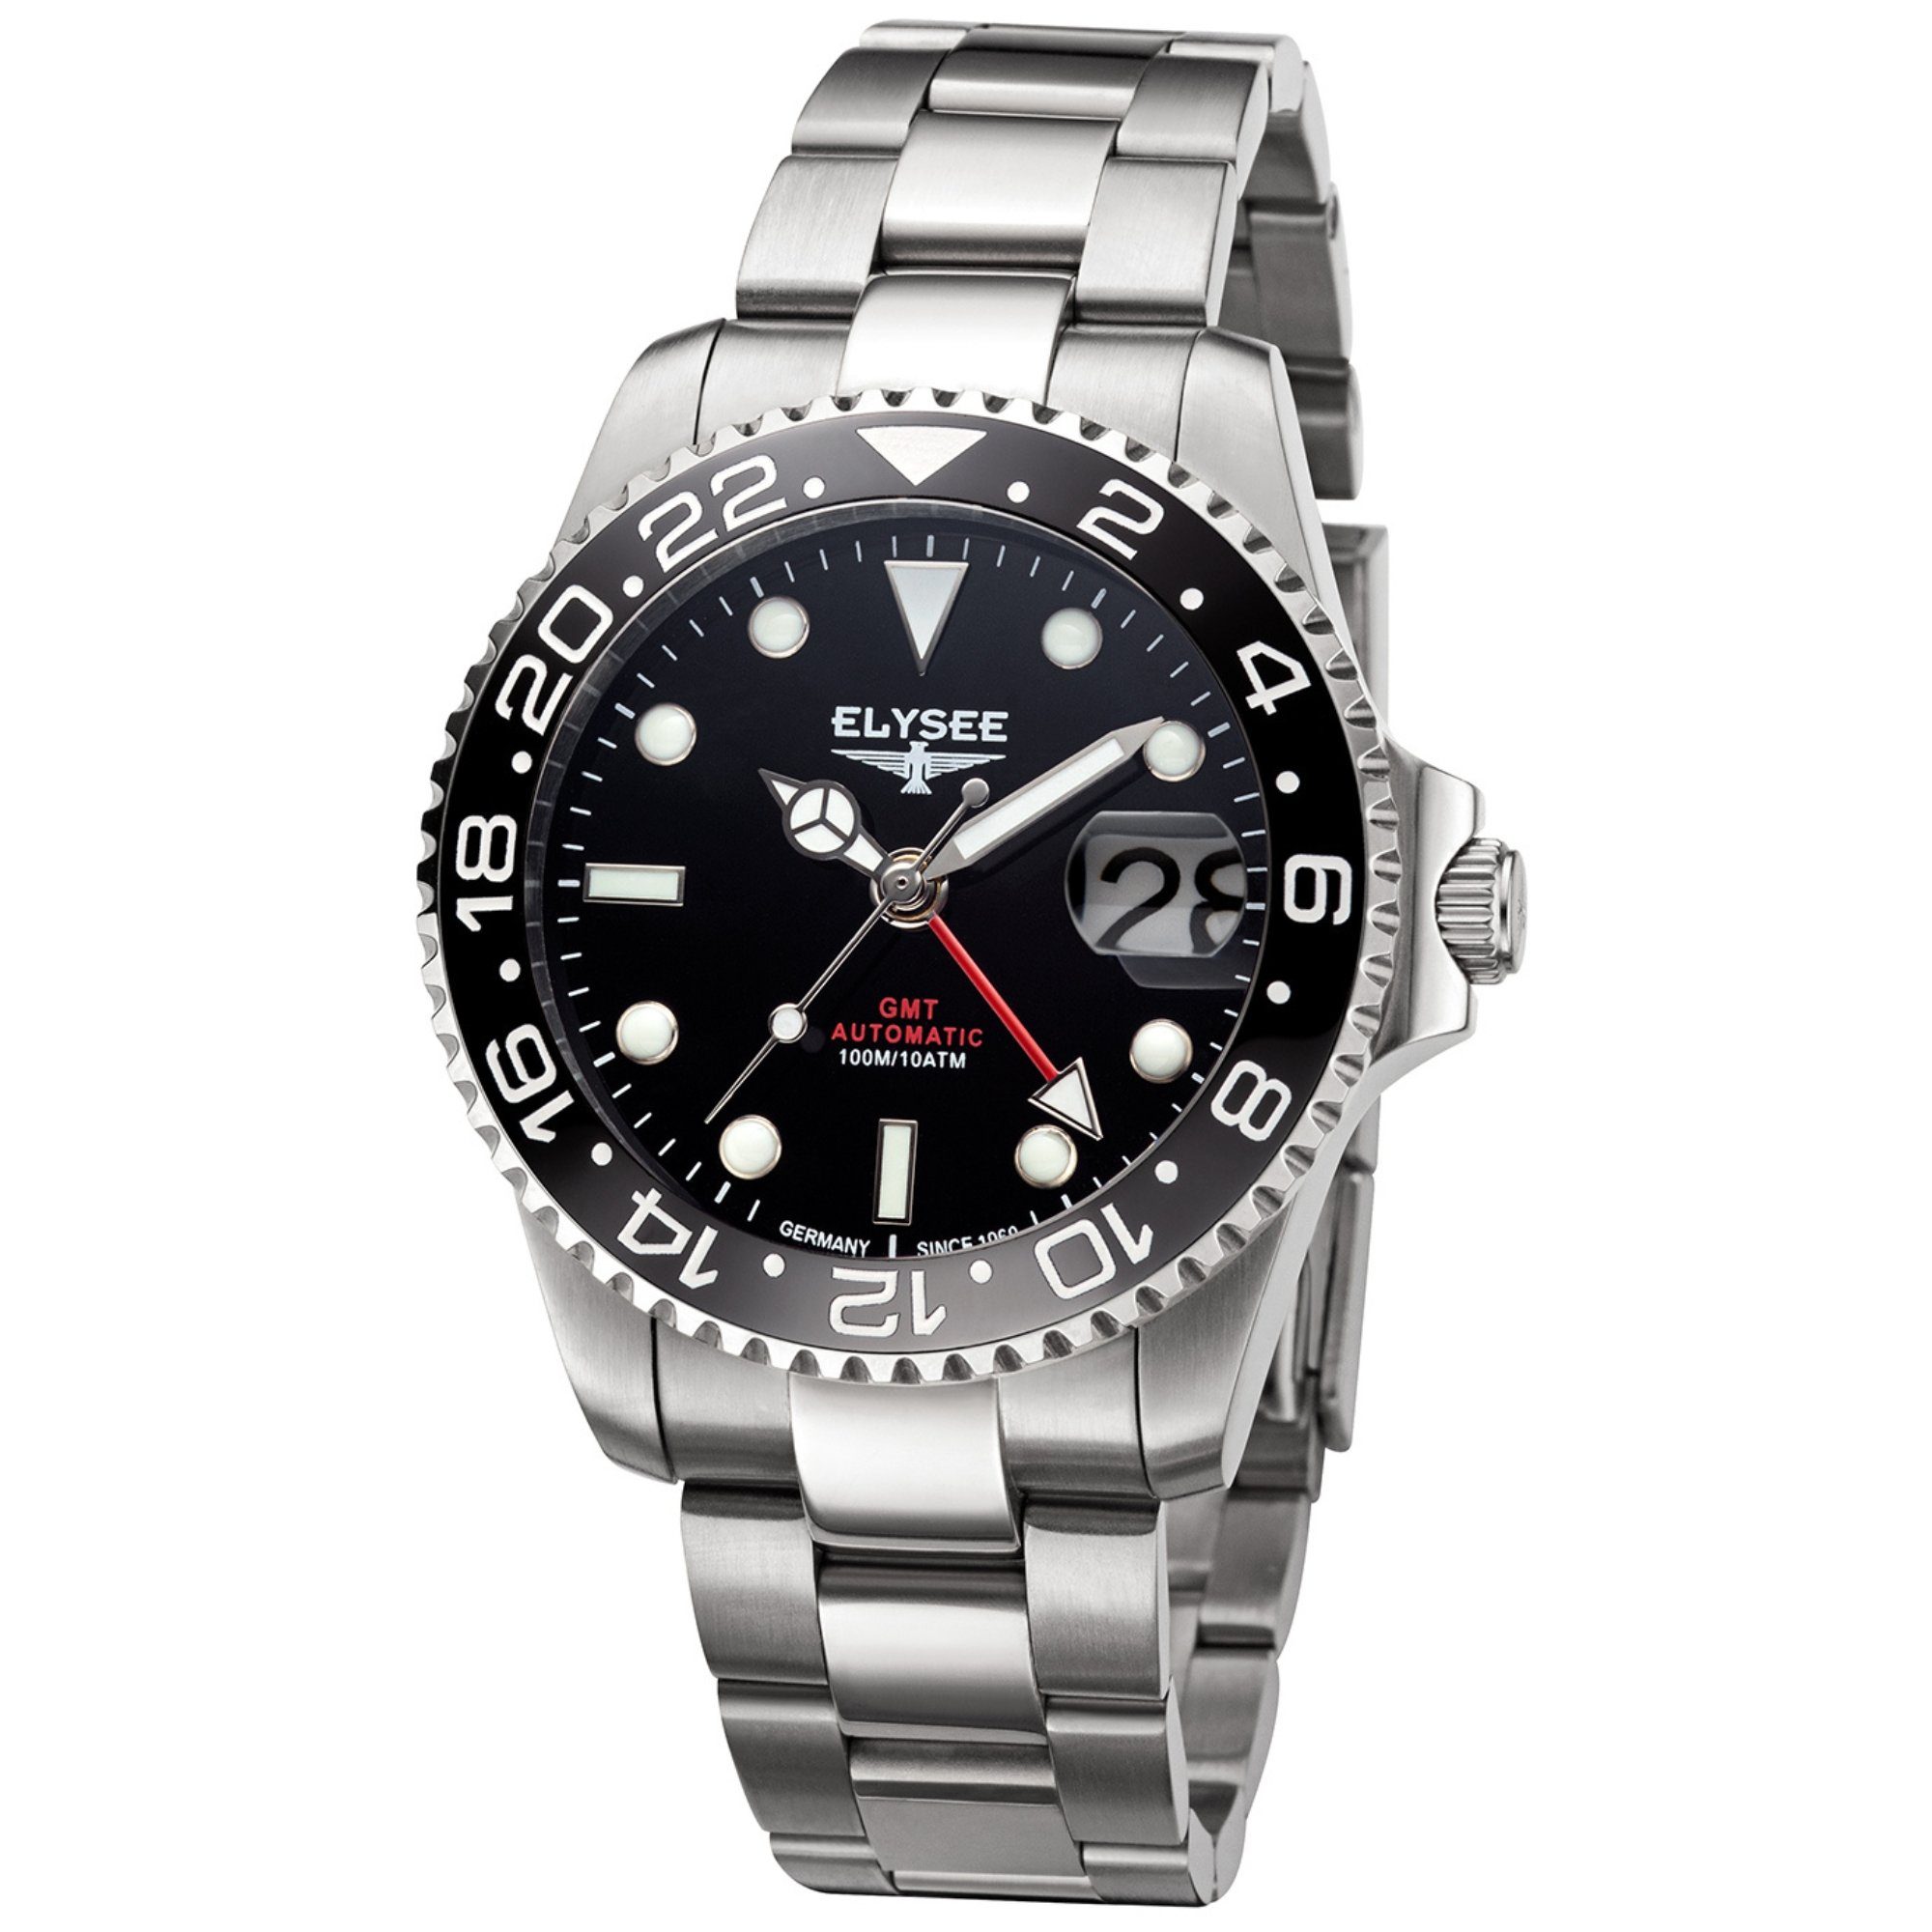 Elysee Automatikuhr GMT AUTOMATIC Herrenuhr 40,5mm Edelstahl 4-Zeiger-Uhr silber, ideal auch als Geschenk schwarz